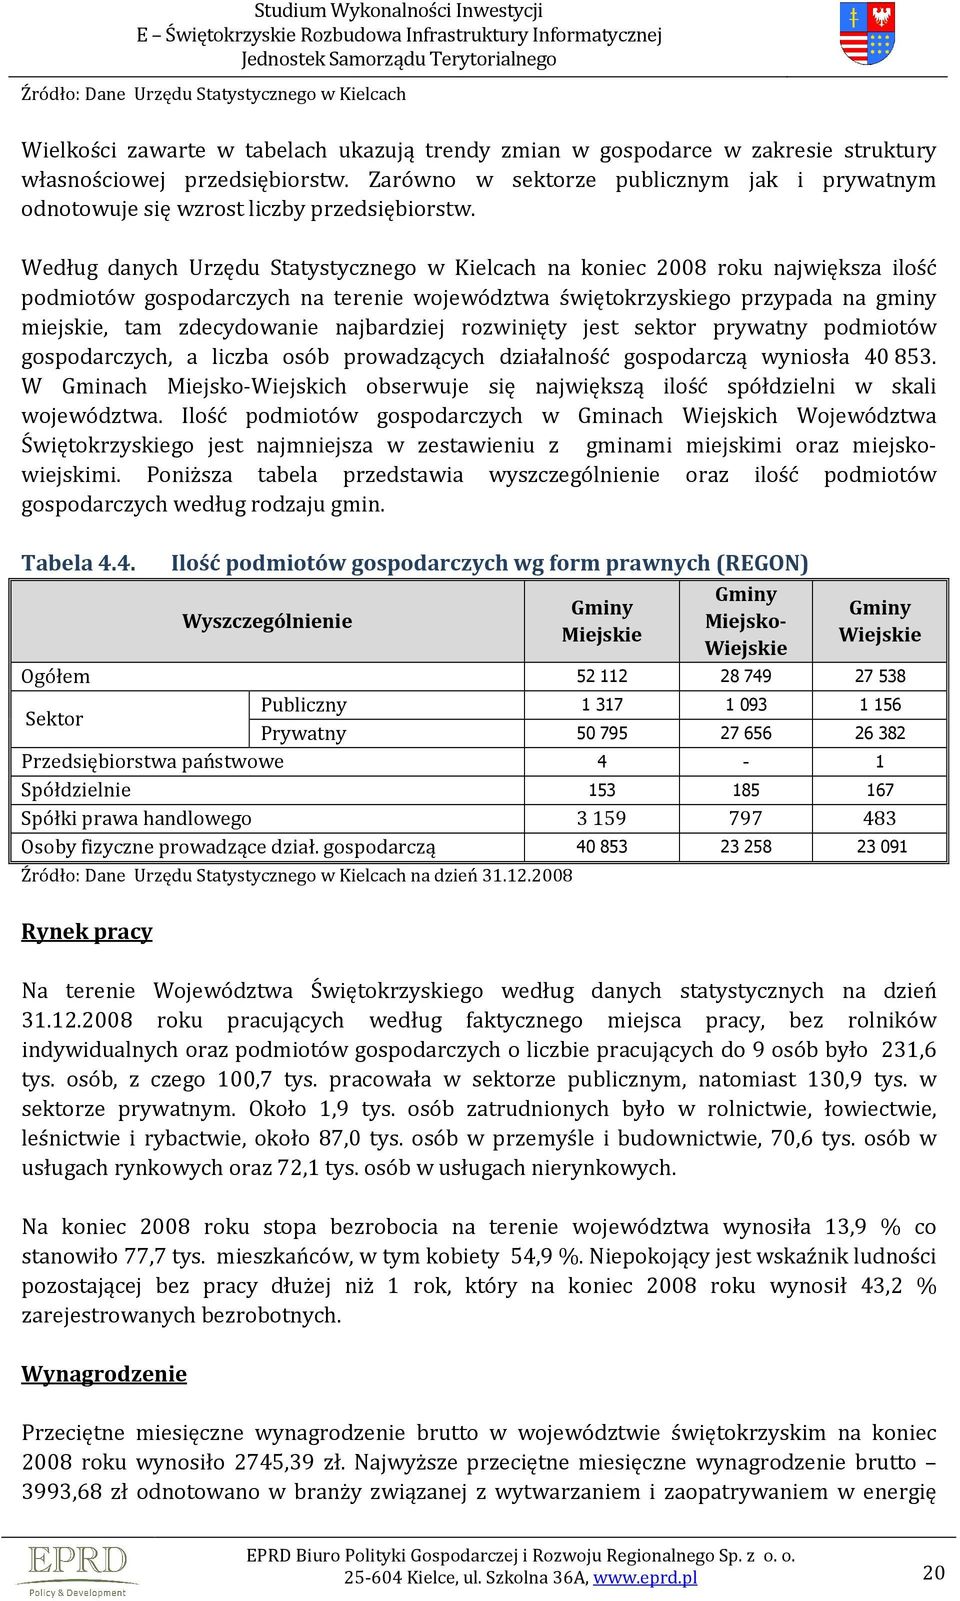 Według danych Urzędu Statystycznego w Kielcach na koniec 2008 roku największa ilość podmiotów gospodarczych na terenie województwa świętokrzyskiego przypada na gminy miejskie, tam zdecydowanie